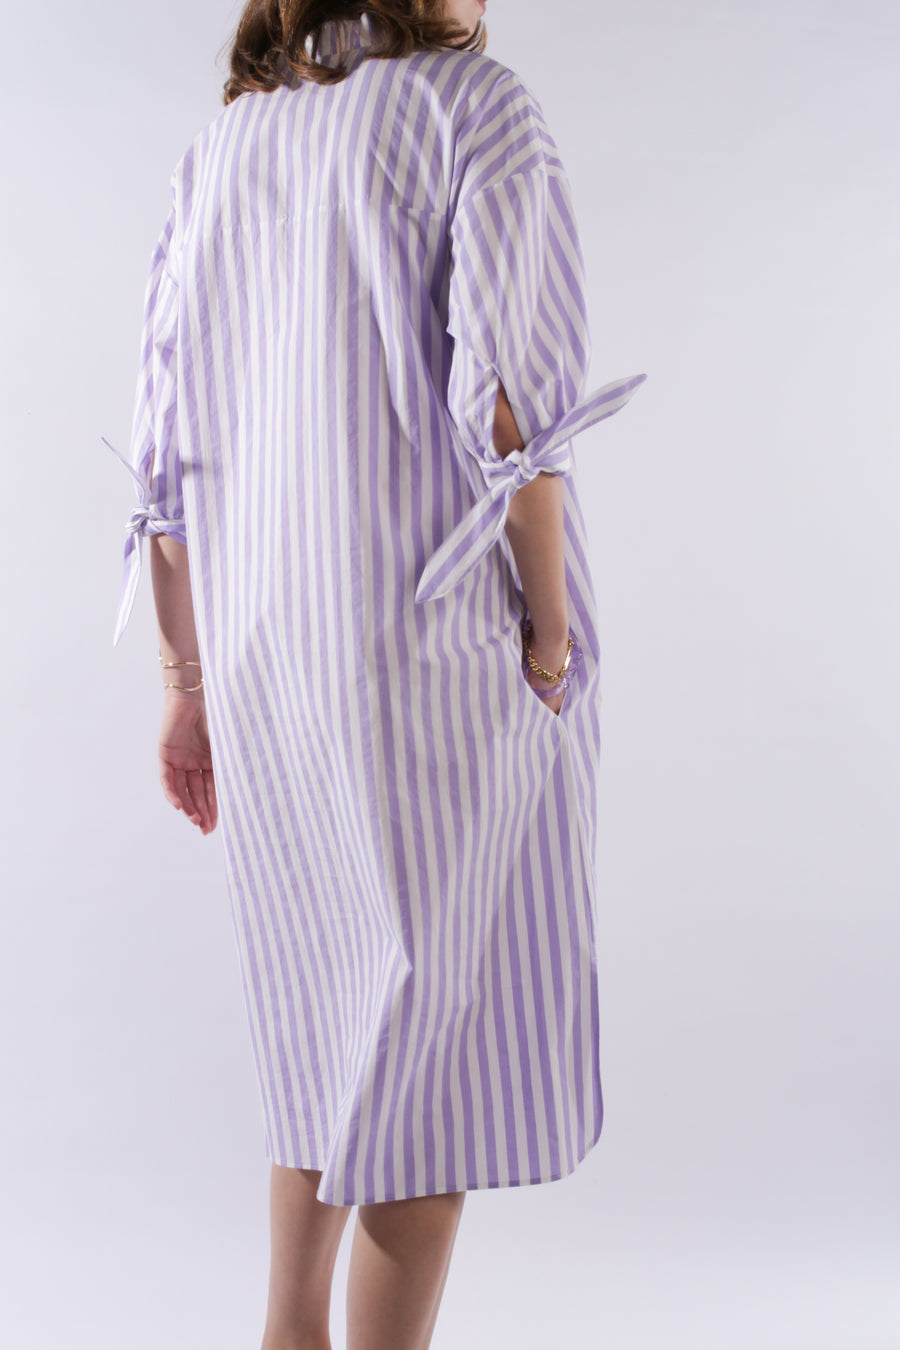 DRESS CRESPI, lavender striped